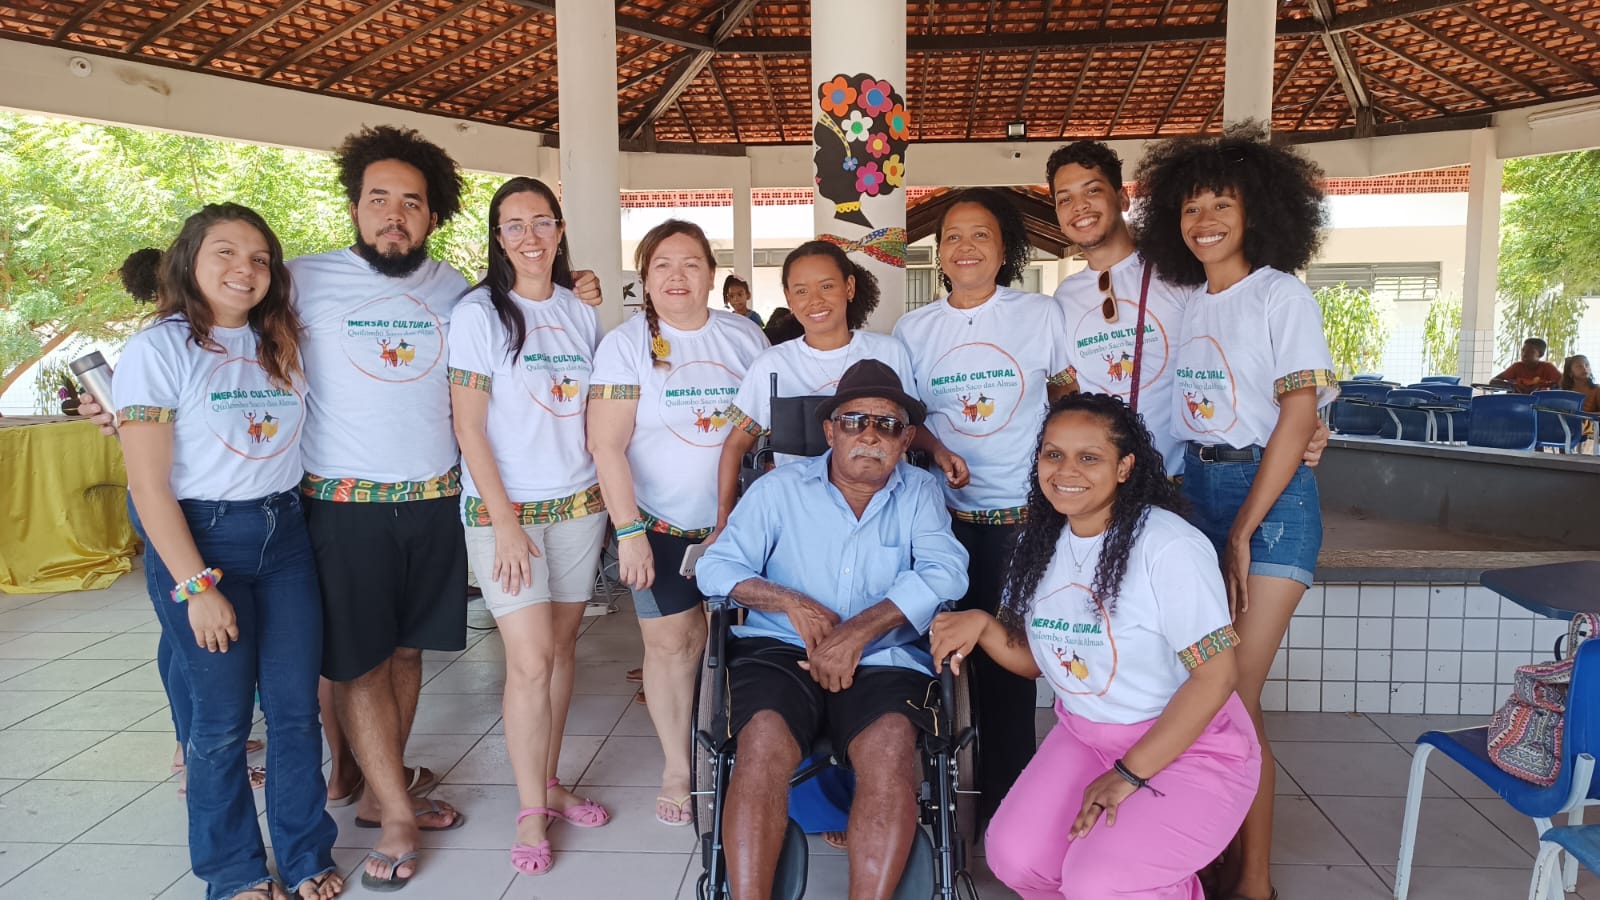 > Professoras e alunas do Curso de Turismo da UFMA realizam evento para imersão cultural com turismo de base comunitária no Quilombo Saco das Almas